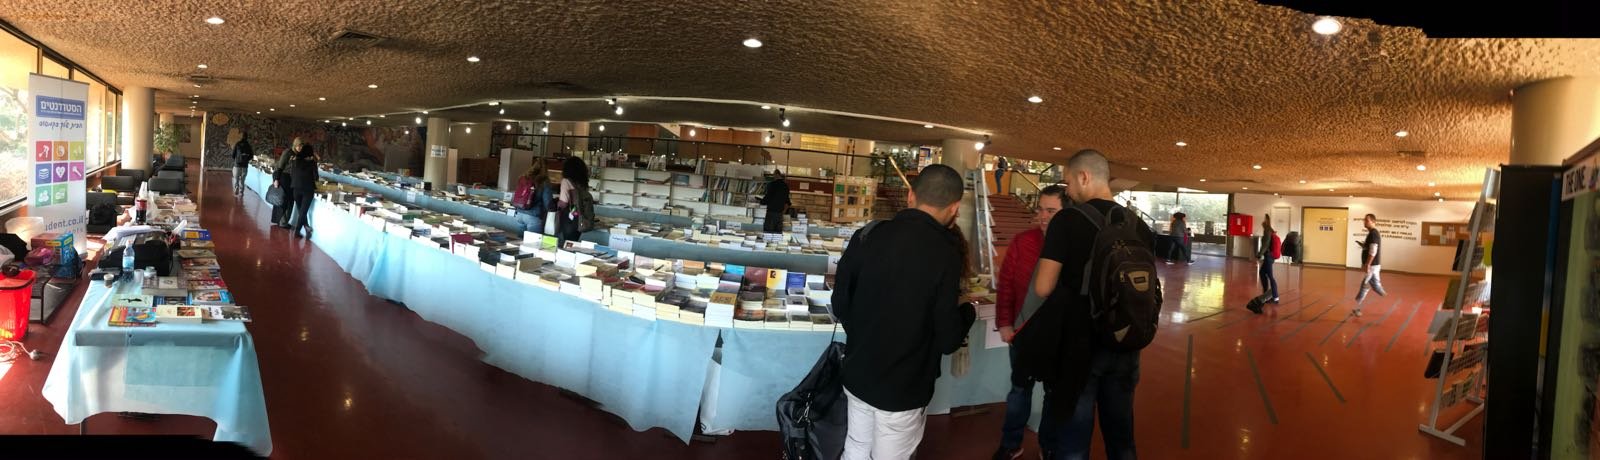 افتتاح اضخم معرض للكتاب في جامعة تل ابيب, مستمر حتى الخميس 11.1.18 .-3